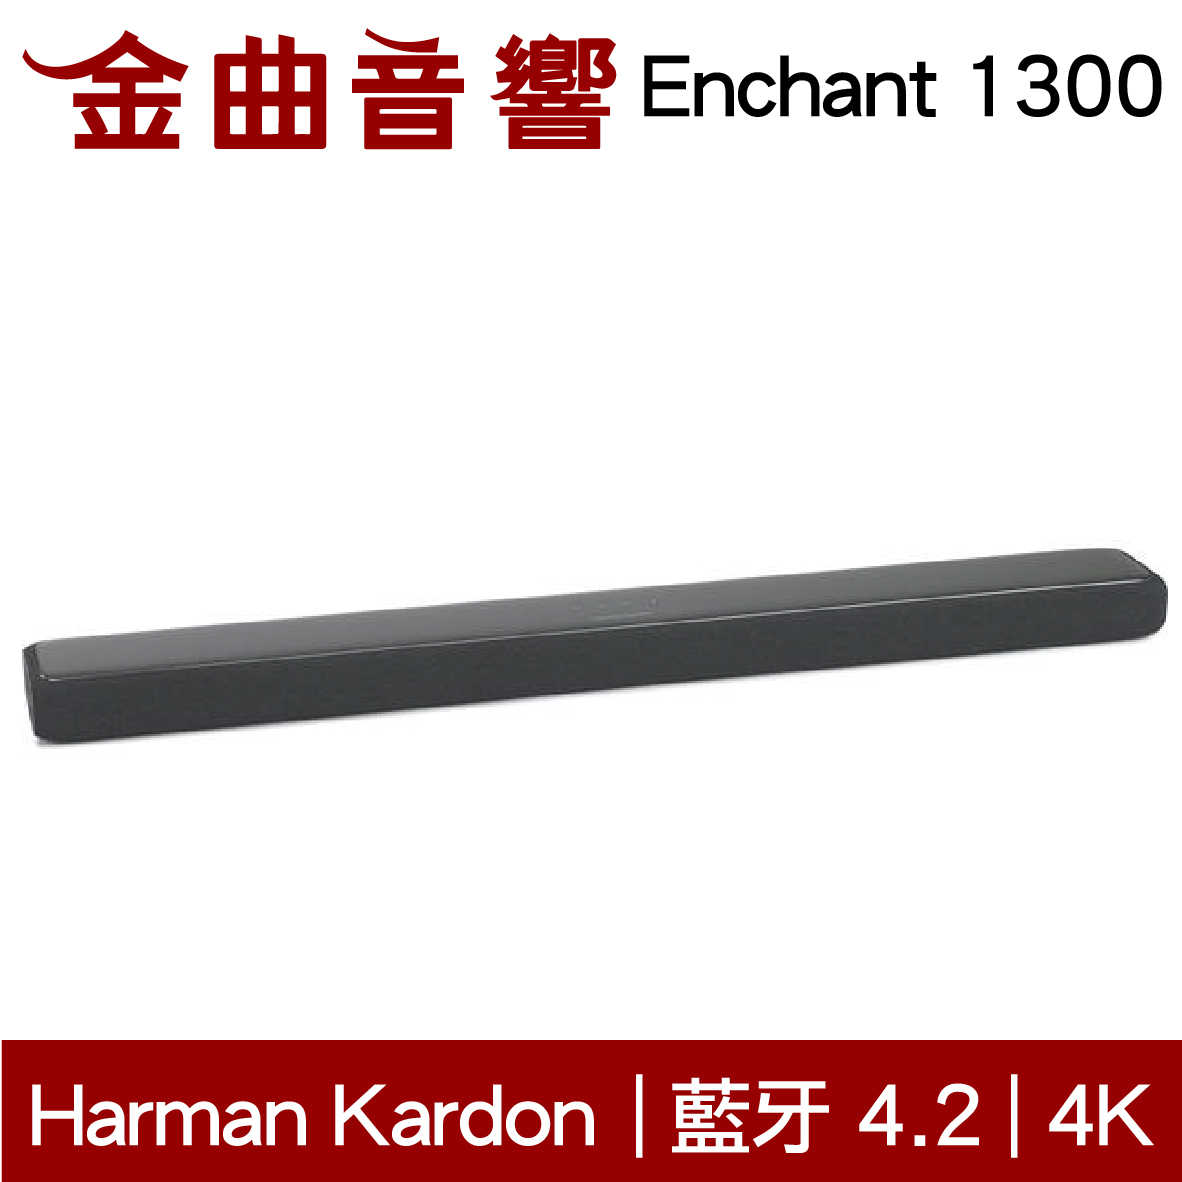 Harman Kardon Enchant 1300 聲霸 | 金曲音響